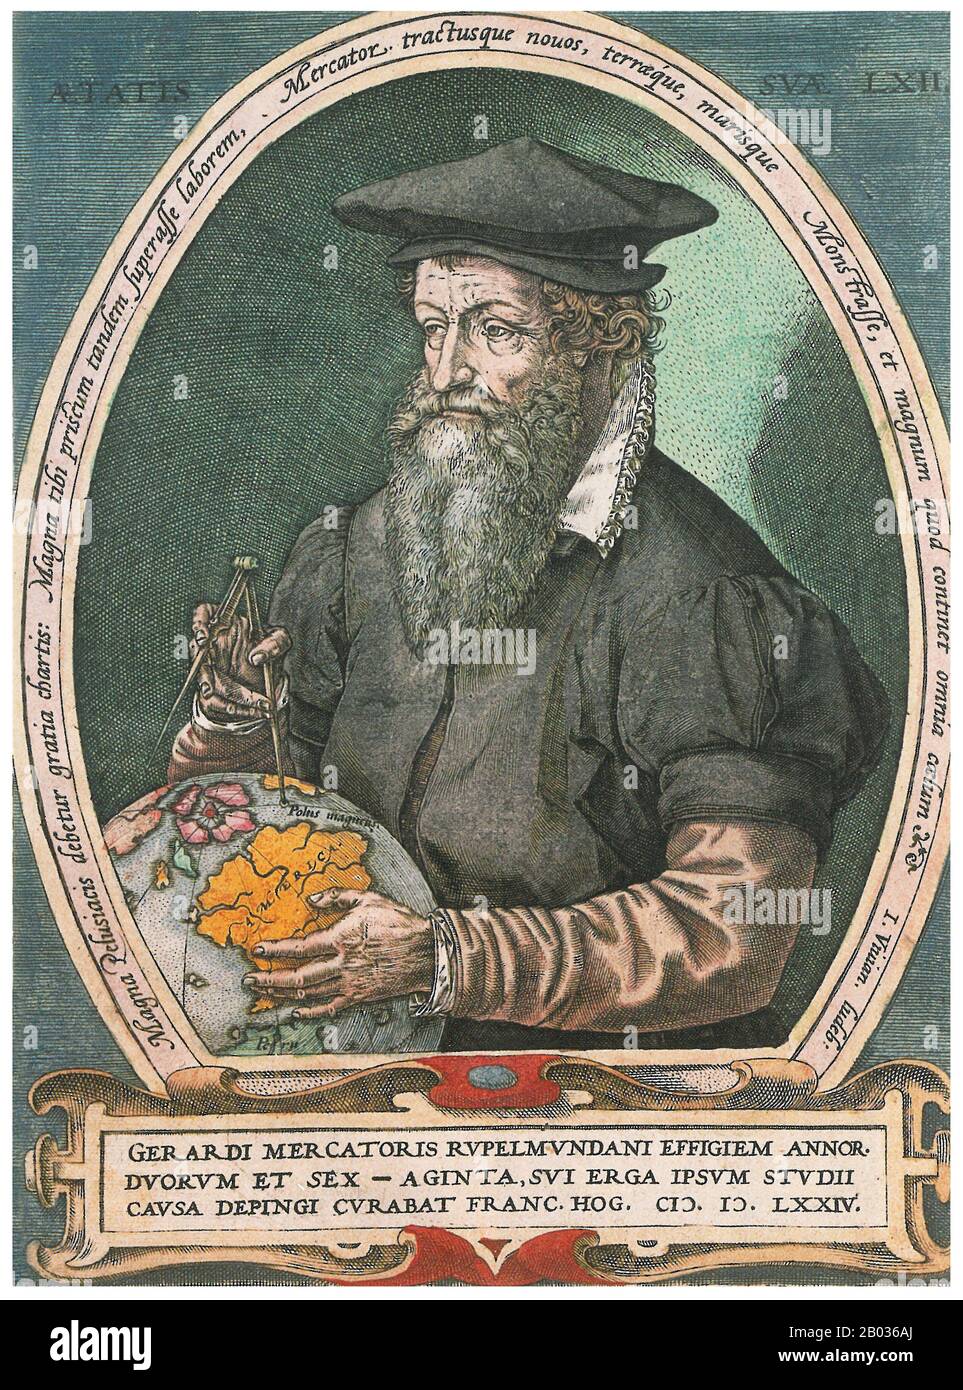 Gerardus Mercator, ein flämischer Deutscher (5. März 1512 - 2. Dezember 1594) war ein Kartograf, der dafür bekannt war, eine Weltkarte auf der Grundlage einer neuen Projektion zu erstellen, die Segelkurse von konstantem Lager als gerade Linien darstellte - eine Innovation, die noch in nautischen Karten verwendet wird, die für die Navigation verwendet werden. An seinem Tag war er der berühmteste Geograph der Welt, aber darüber hinaus hatte er Interesse an Theologie, Philosophie, Geschichte, Mathematik und Magnetismus sowie an einem versierten Graveur, Kalligraphen und Hersteller von Globen und wissenschaftlichen Instrumenten. Stockfoto